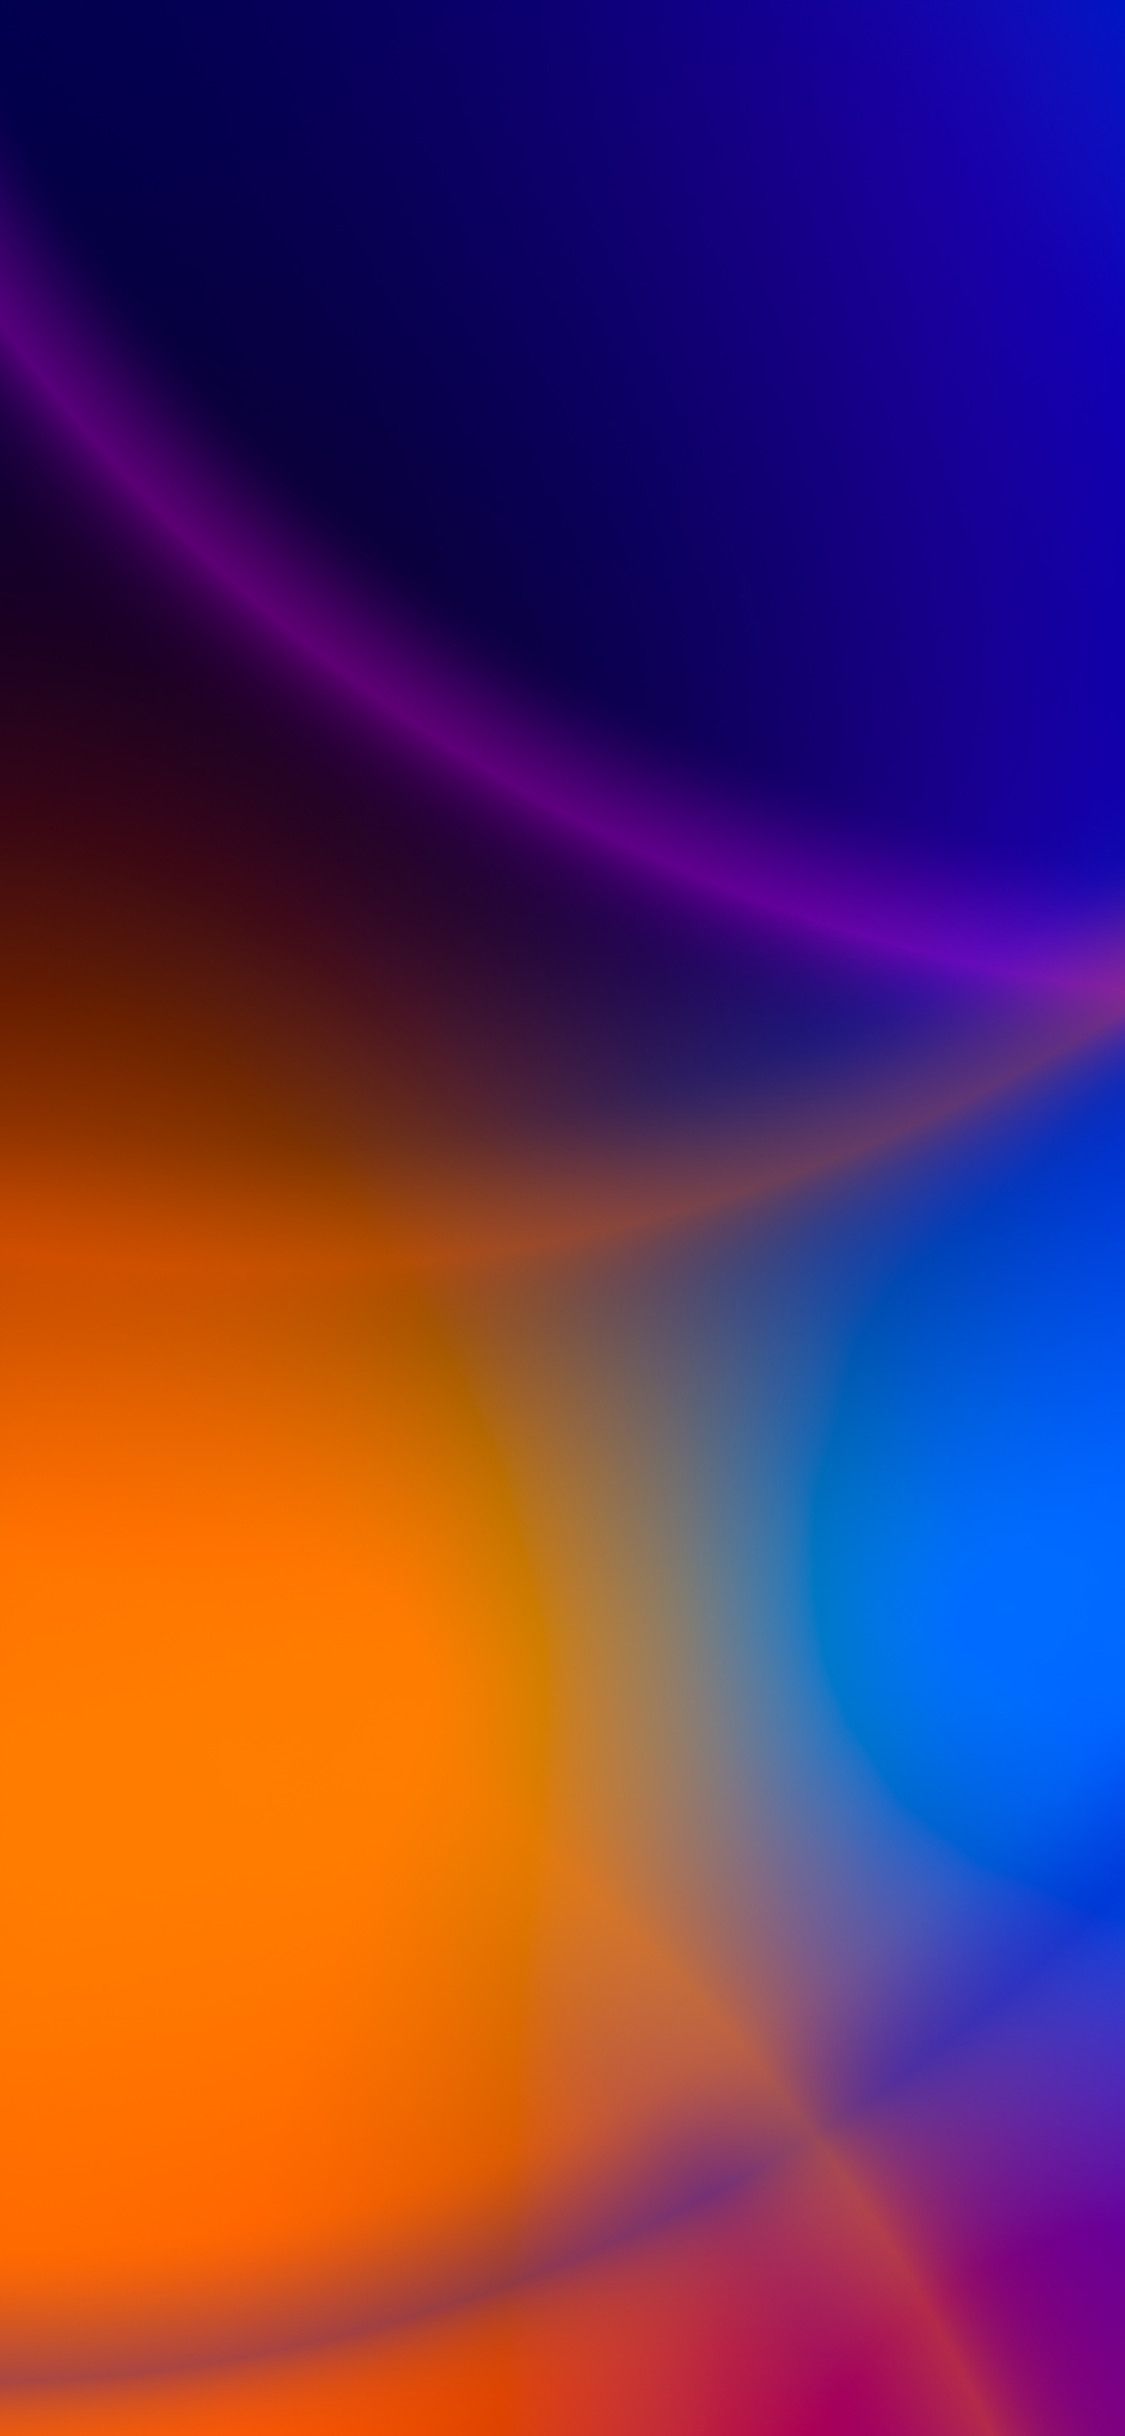 Blur Abstract Art 4k wallpaper